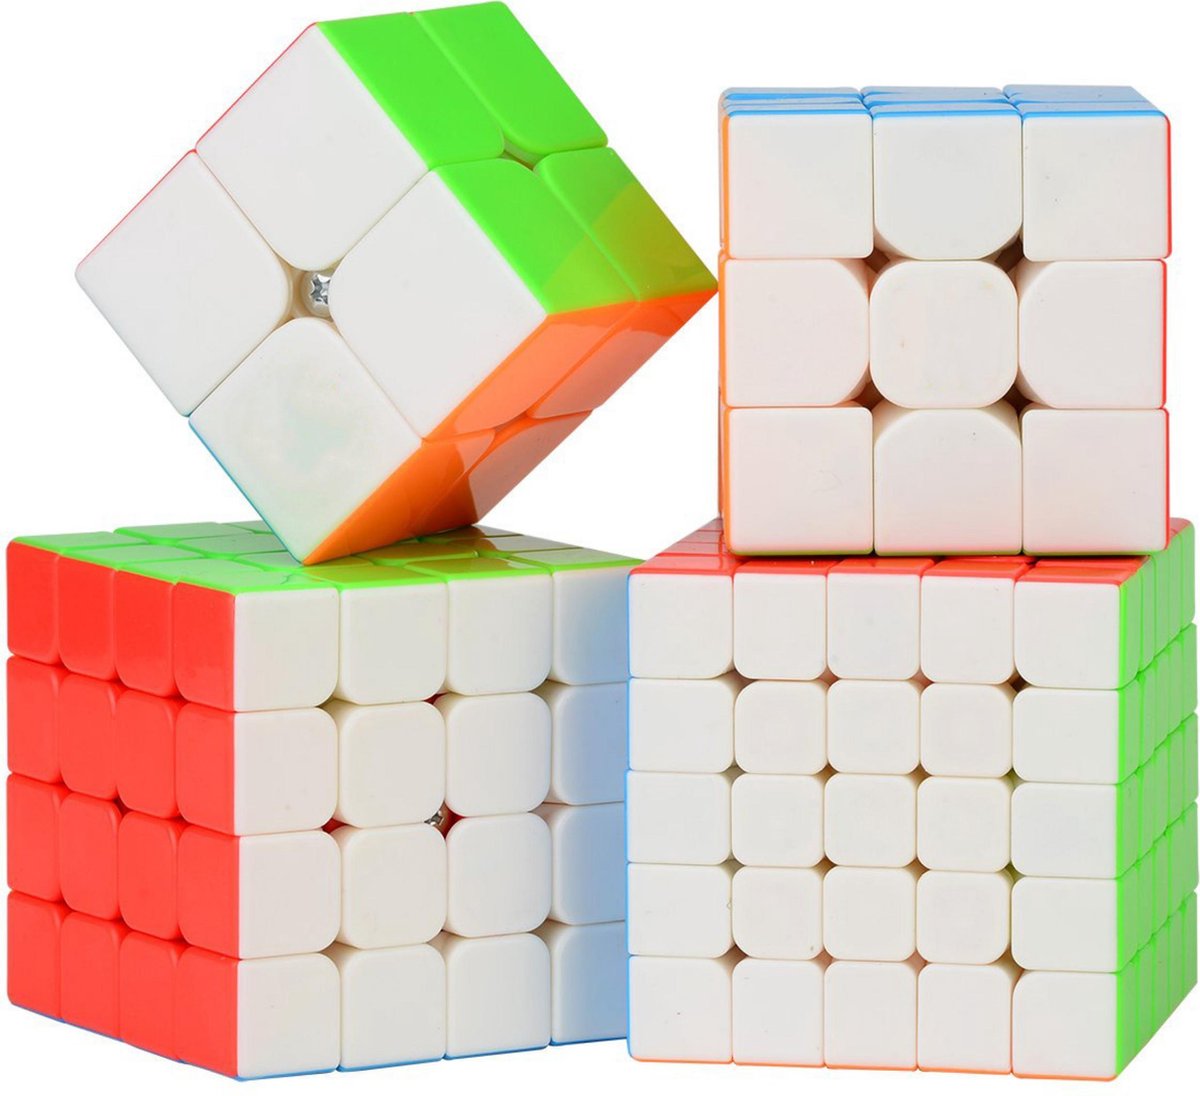 ANSALDO Set De 4 Cubos Magicos 2X2 3X3 4X4 Y 5X5